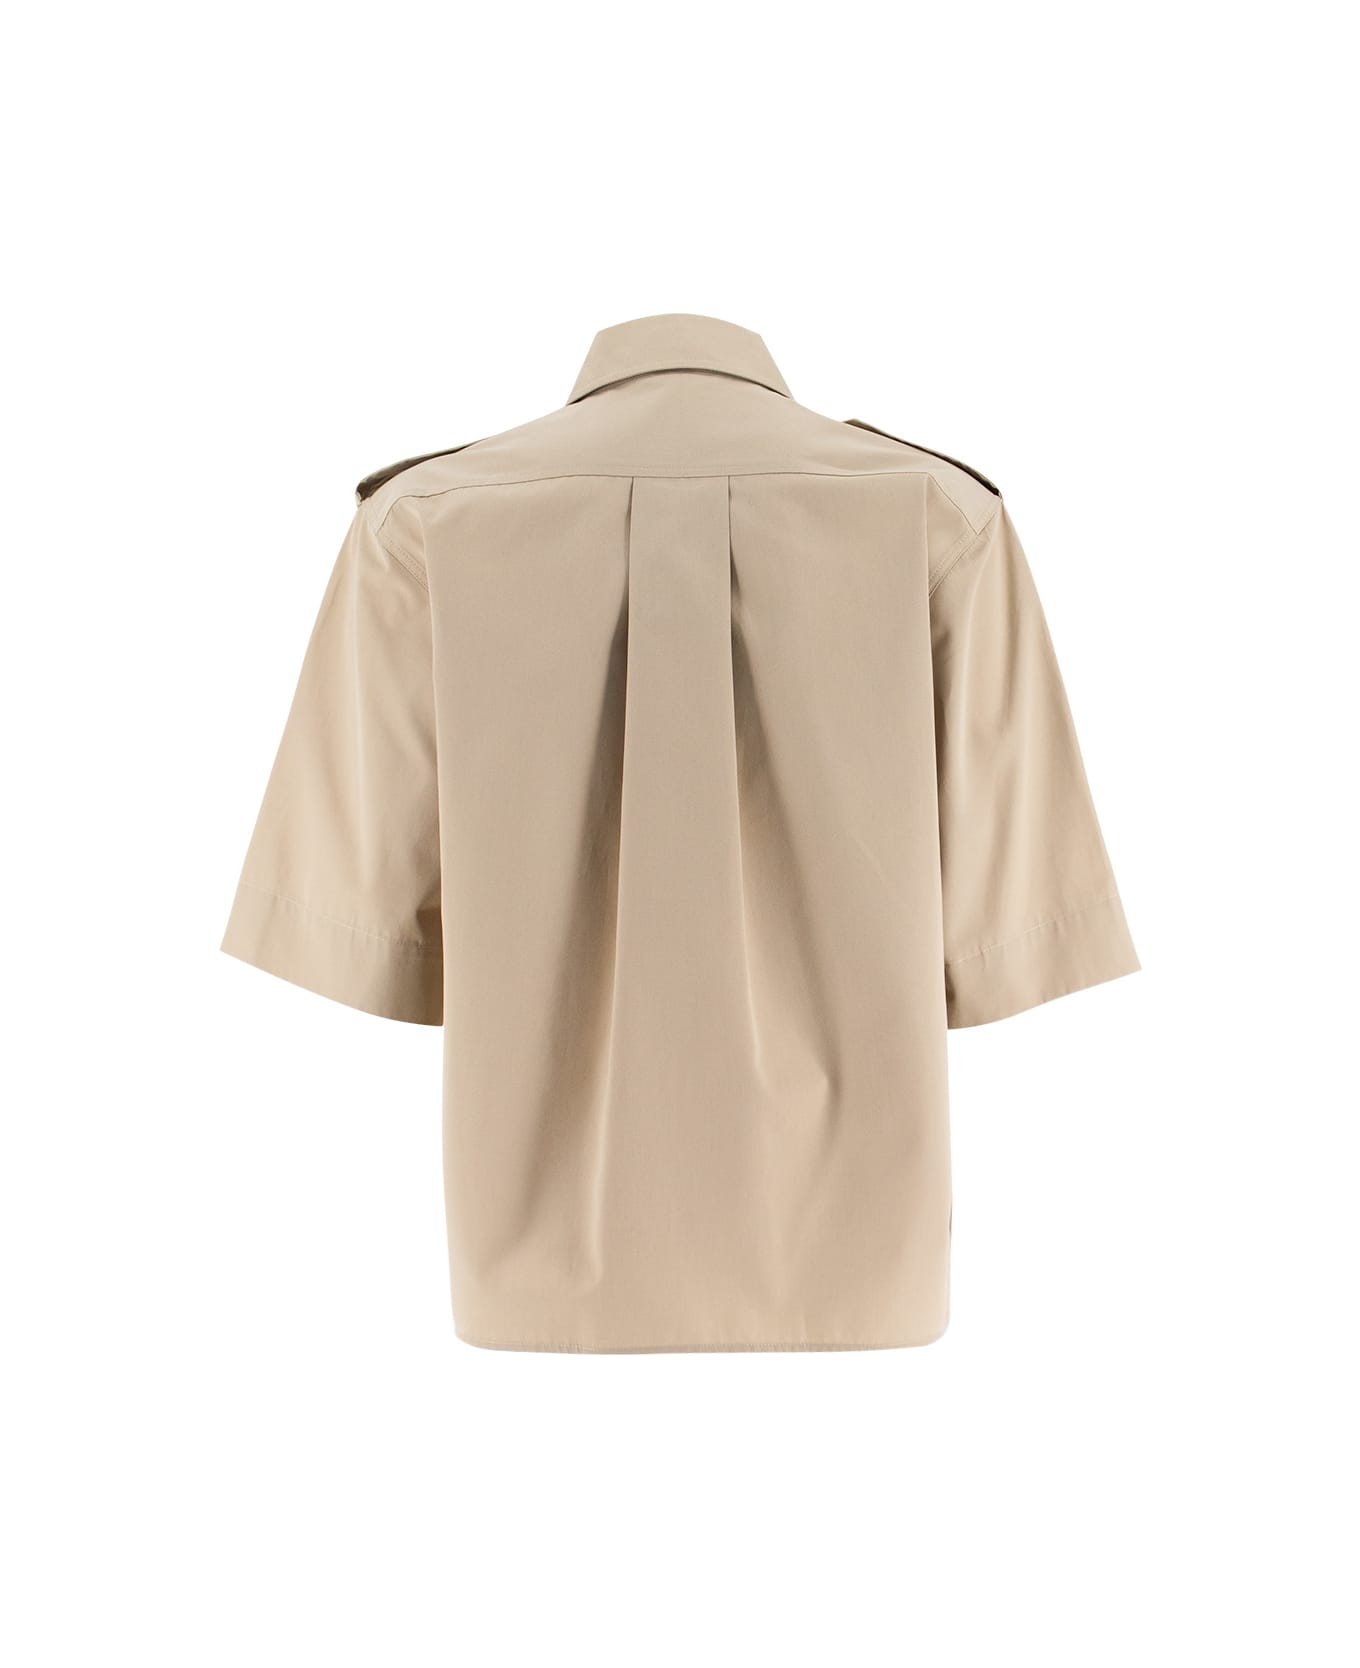 Aspesi Cotton Shirt - BEIGE/BEIGE